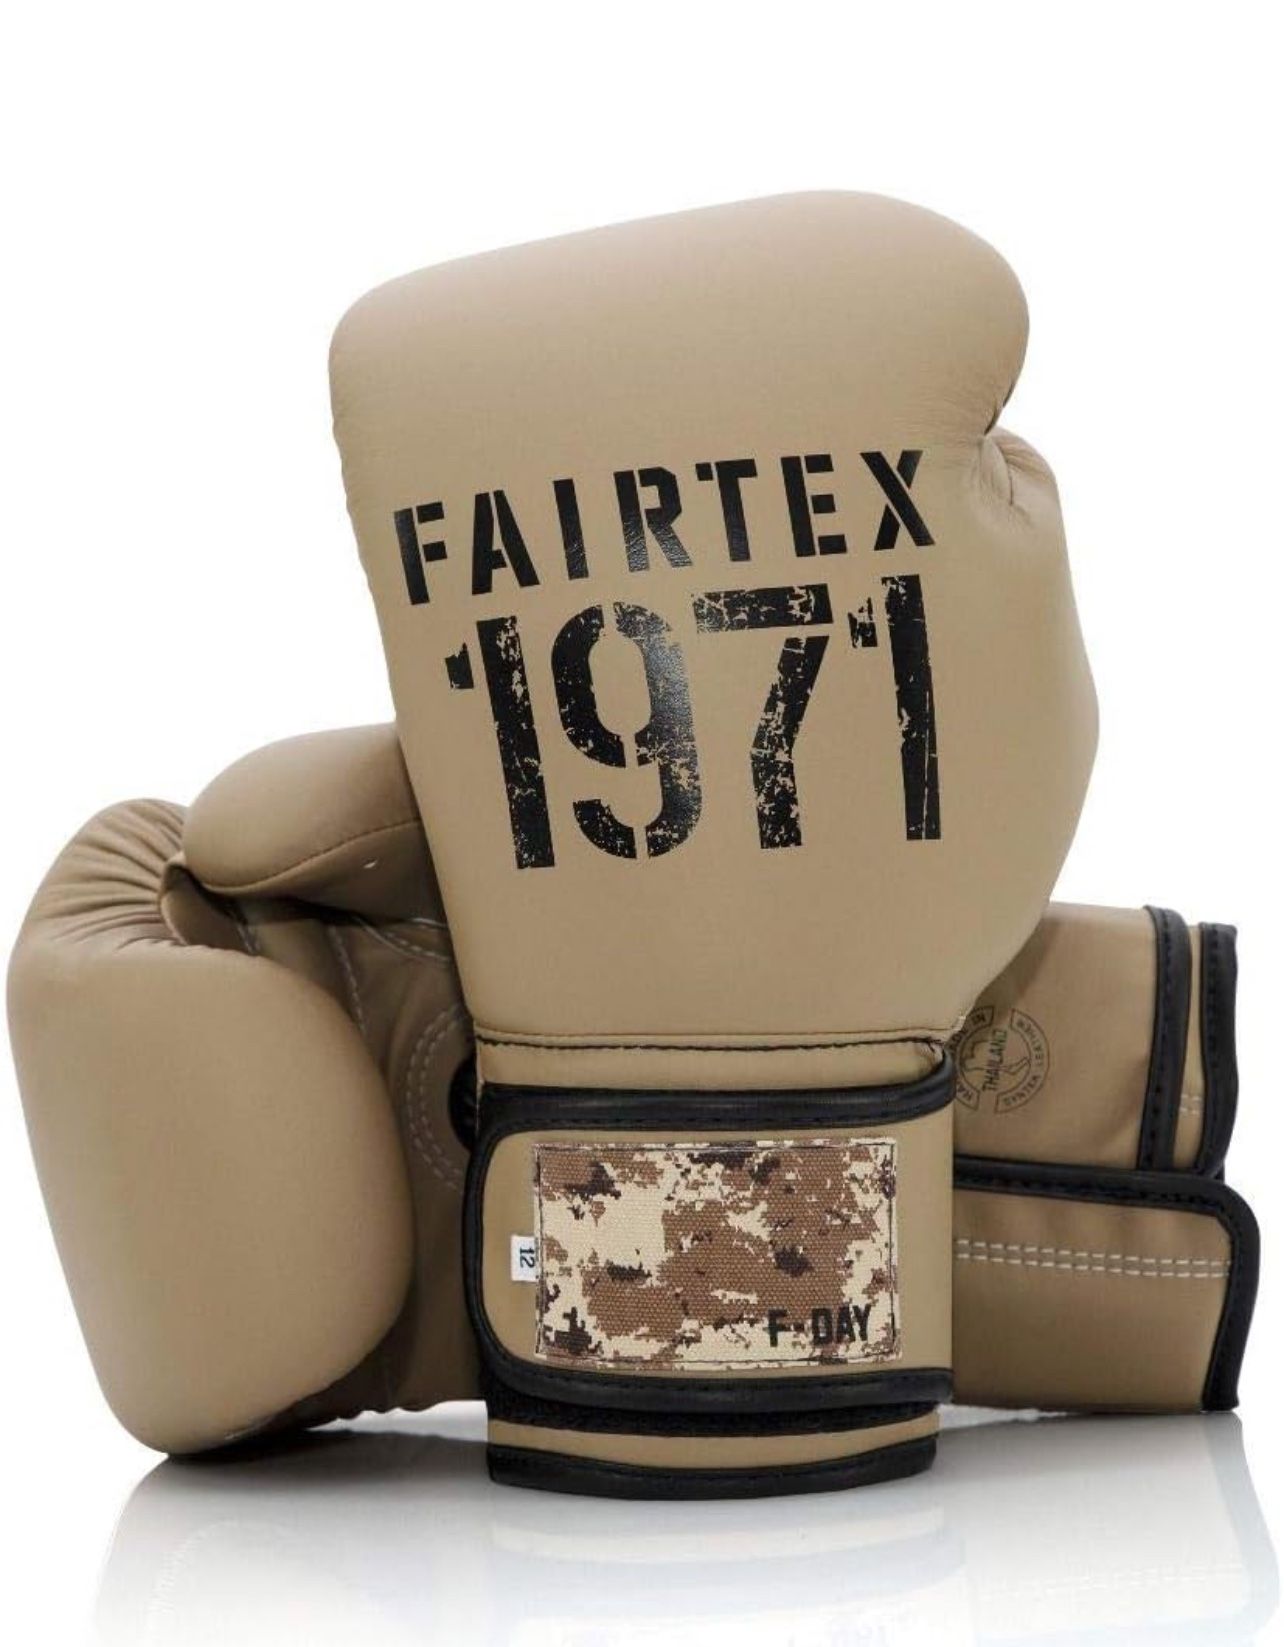 Fairtex F Day 2 Bgv25 Brand New Sealed In Bag In Box 16 Oz